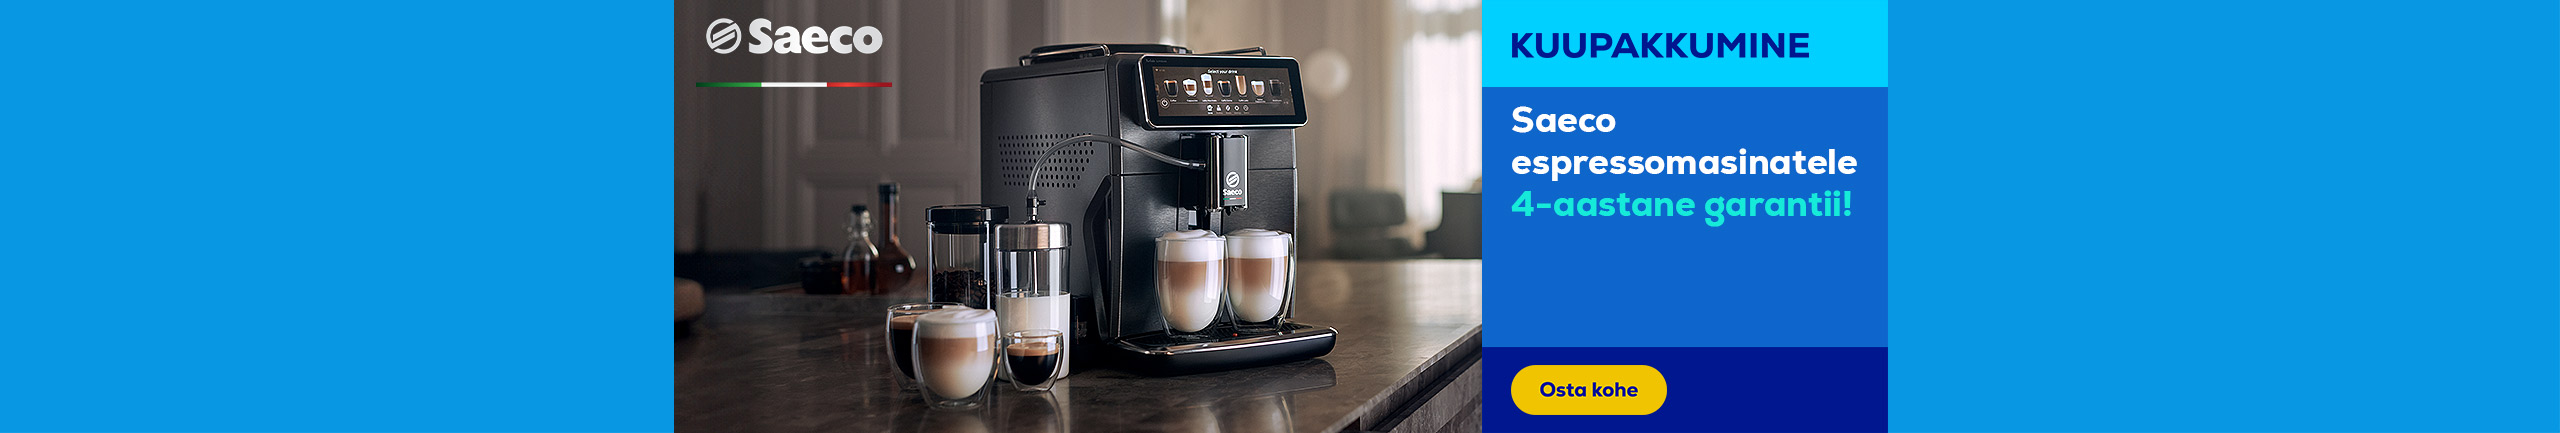 Saeco espressomasinatega tasuta kaasa 2 aastat lisagarantiid!